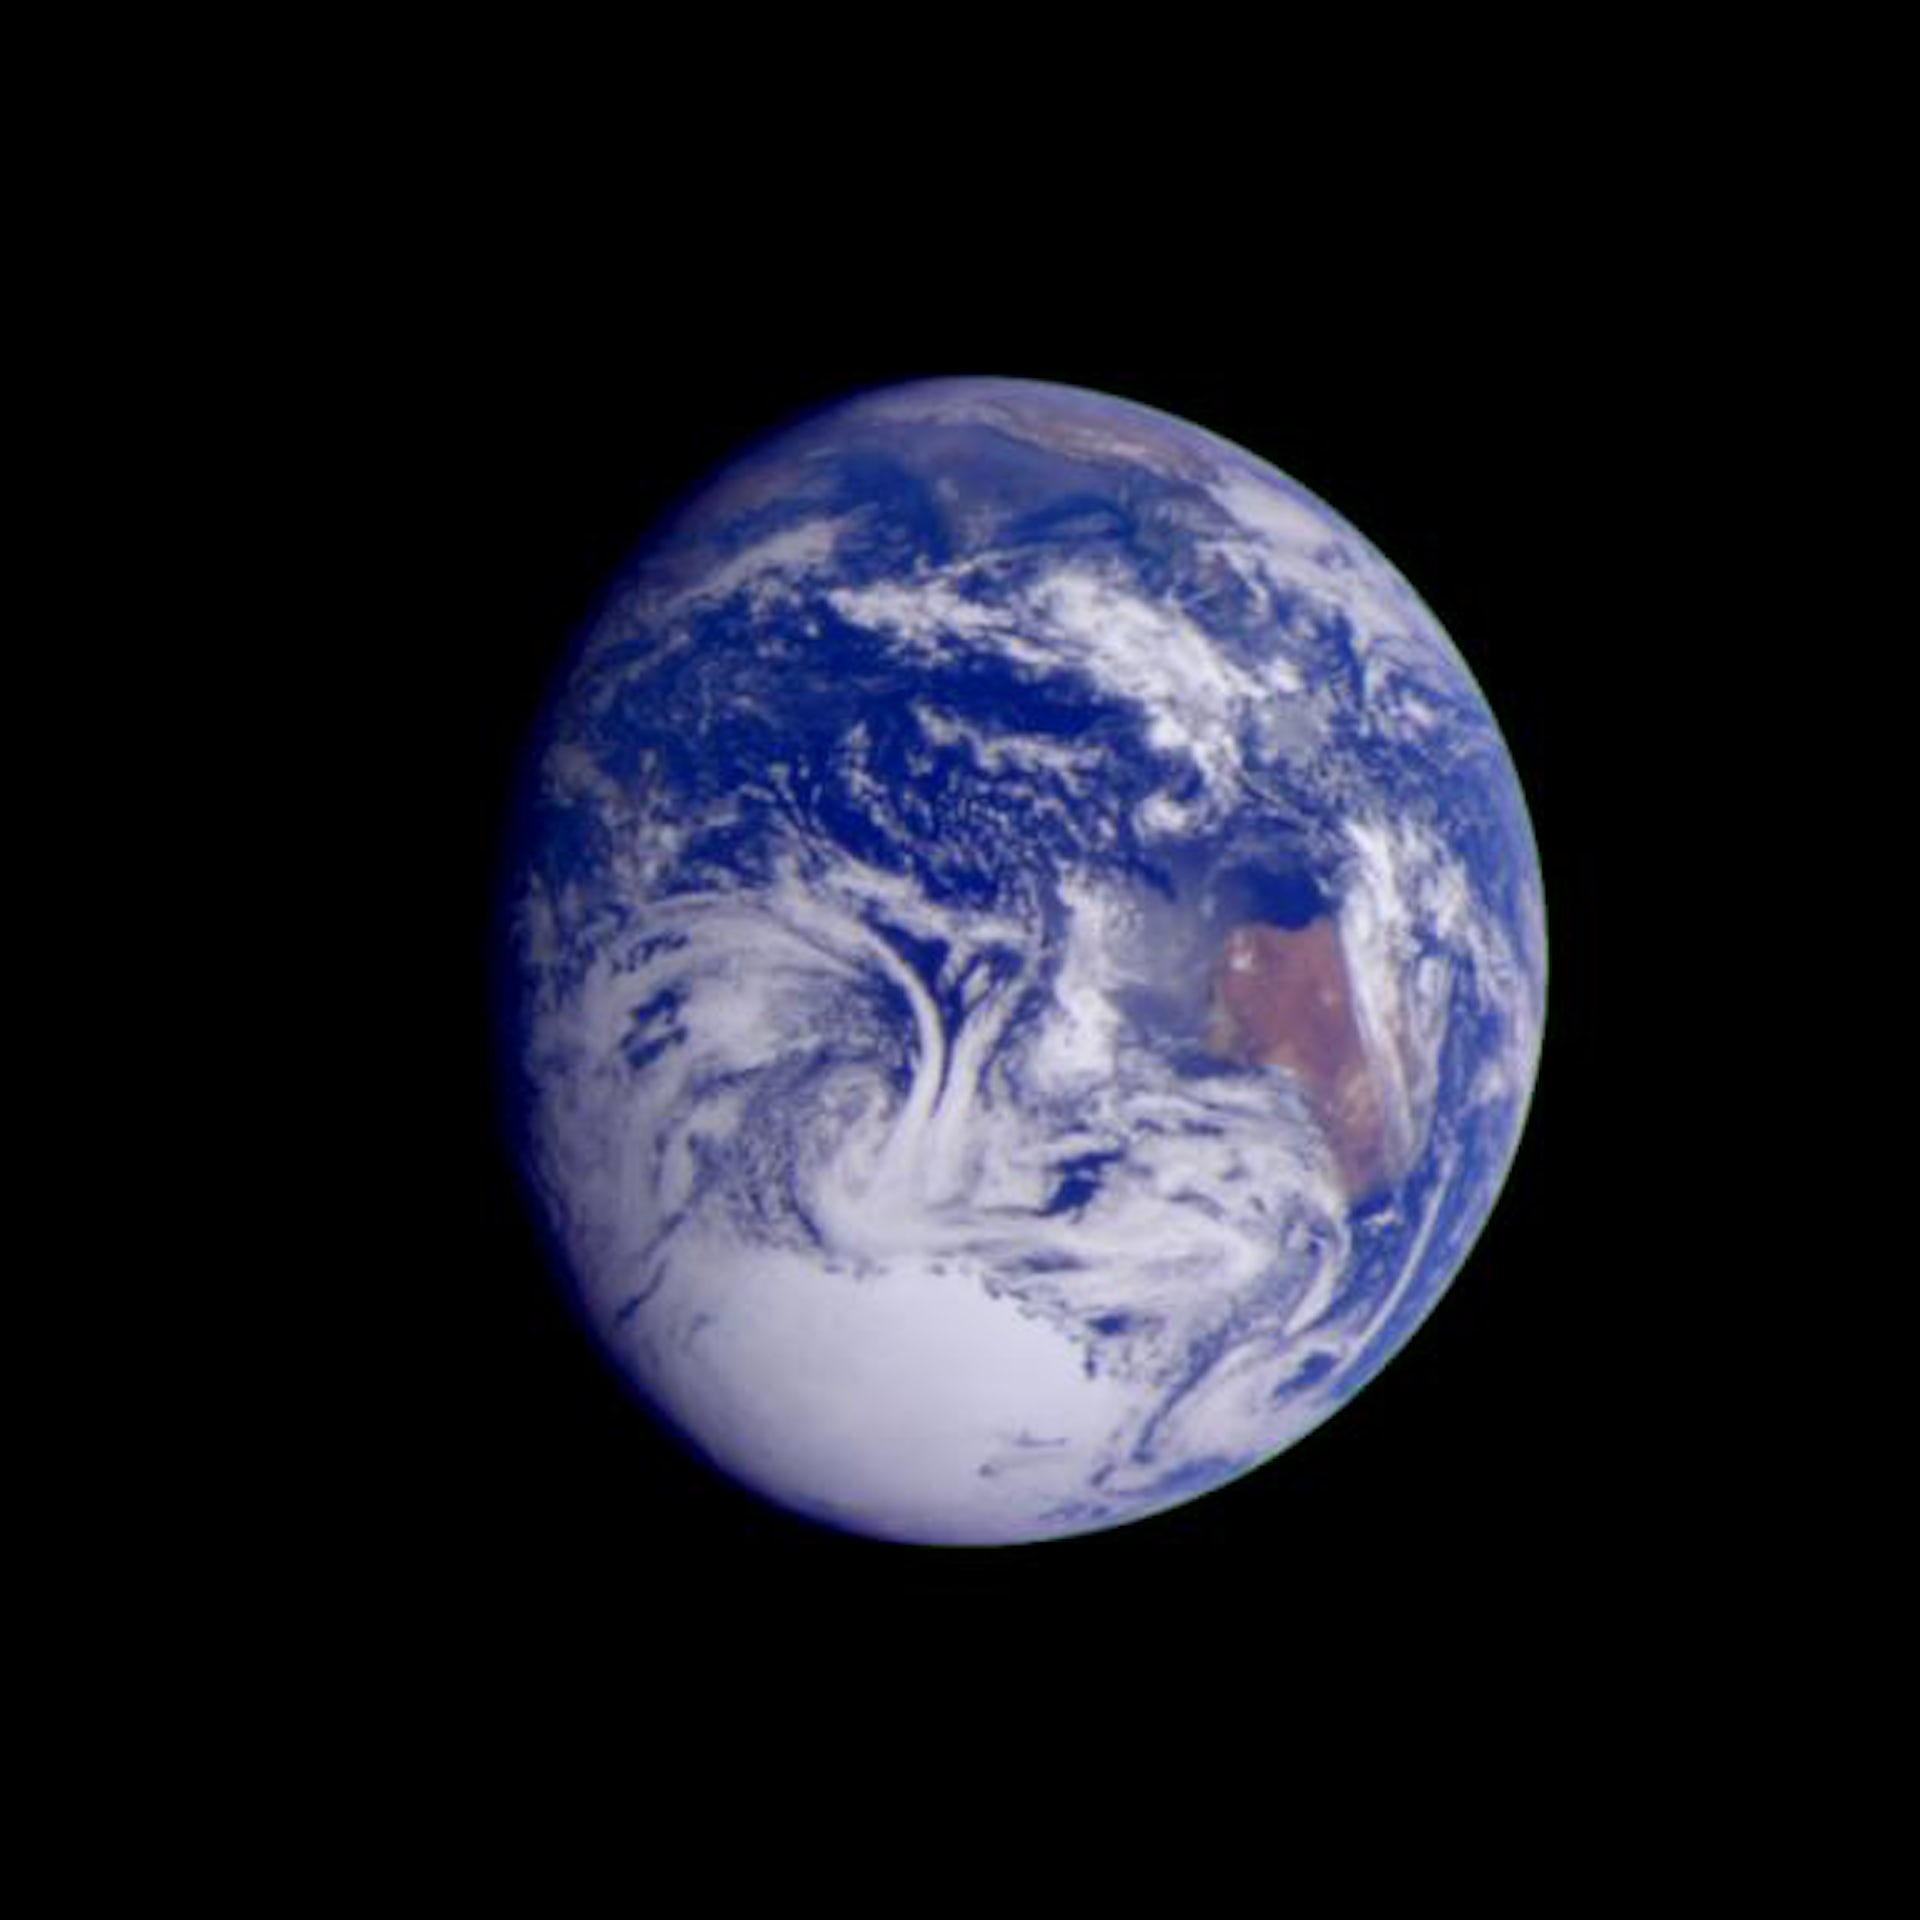 تصویری که توسط فضاپیمای گالیله در فاصله 2.4 میلیون کیلومتری گرفته شده است.